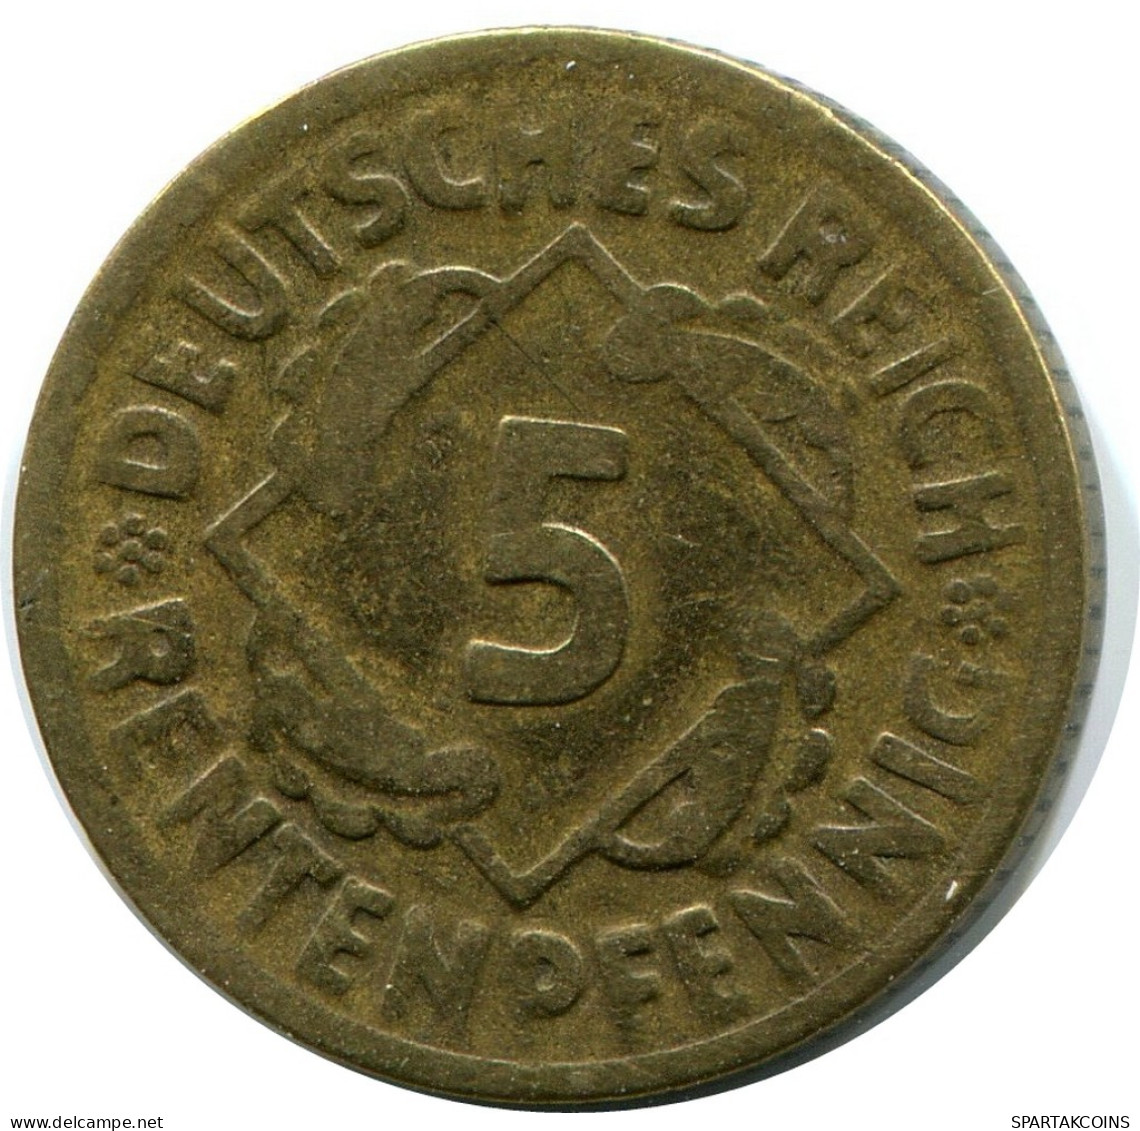 5 RENTENPFENNIG 1924 G ALEMANIA Moneda GERMANY #DB871.E - 5 Rentenpfennig & 5 Reichspfennig